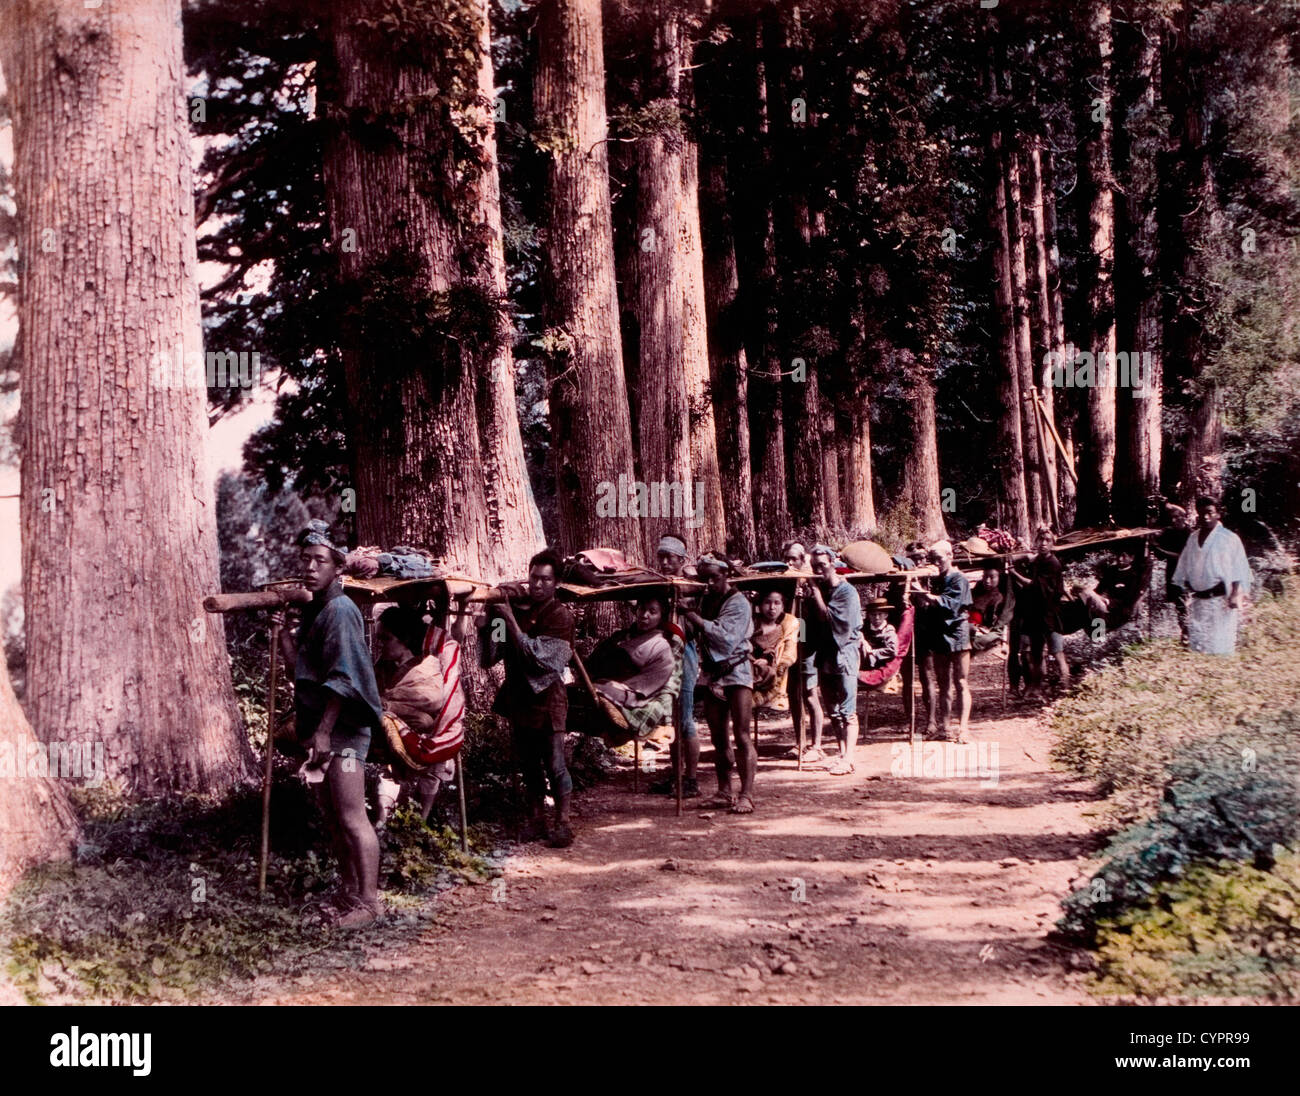 Los hombres japoneses llevando las mujeres japonesas en viajar sillas a lo largo de caminos rurales, Kusakabe Kimbei Hand-Colored, Fotografía, circa 1870 Foto de stock